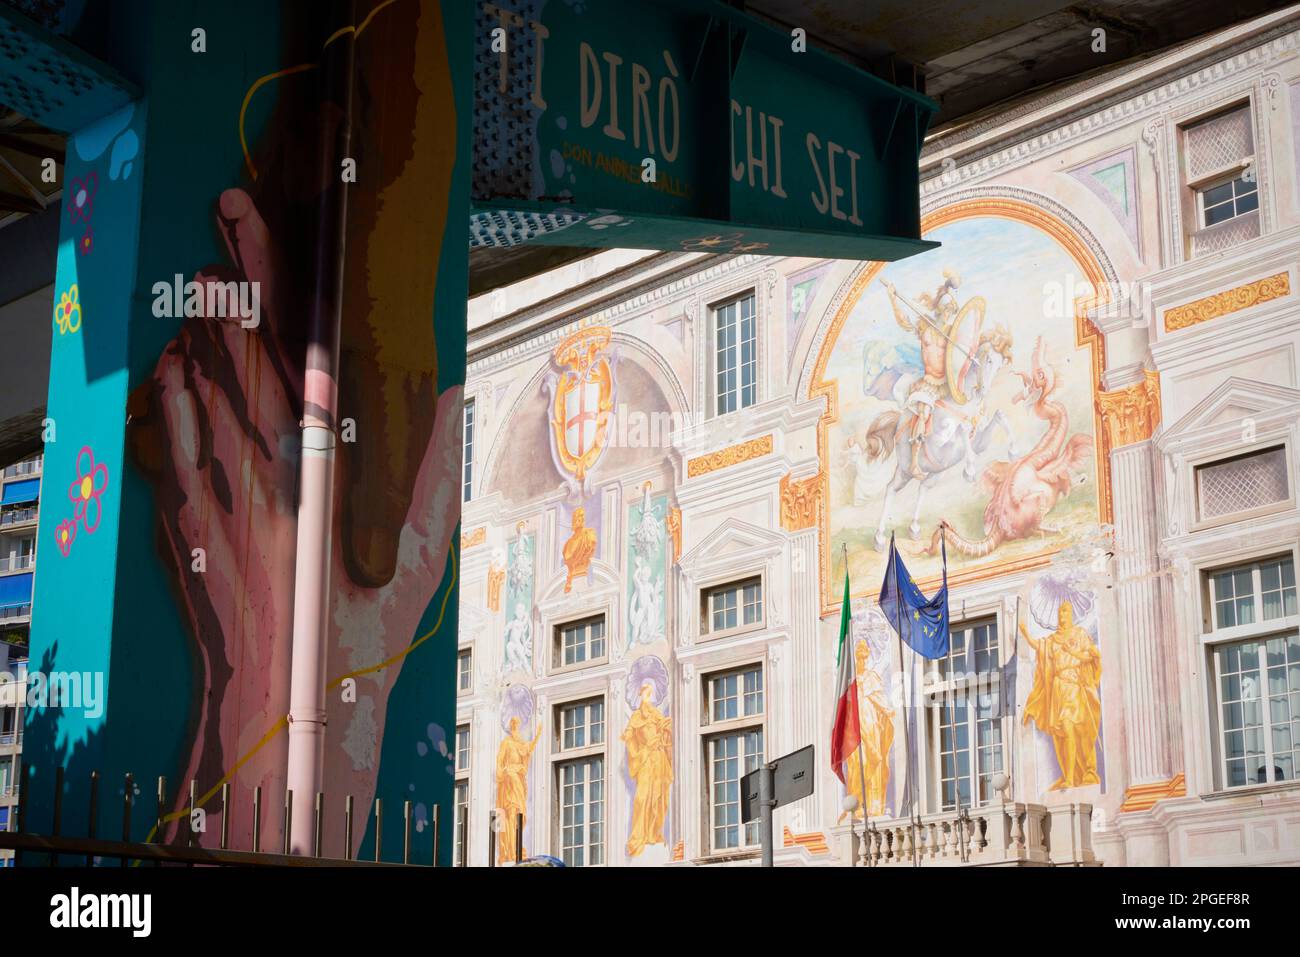 Graffiti on flyover support in front of decorative facade of Palazzo San Giorgio, Genoa, Liguria, Italy Stock Photo